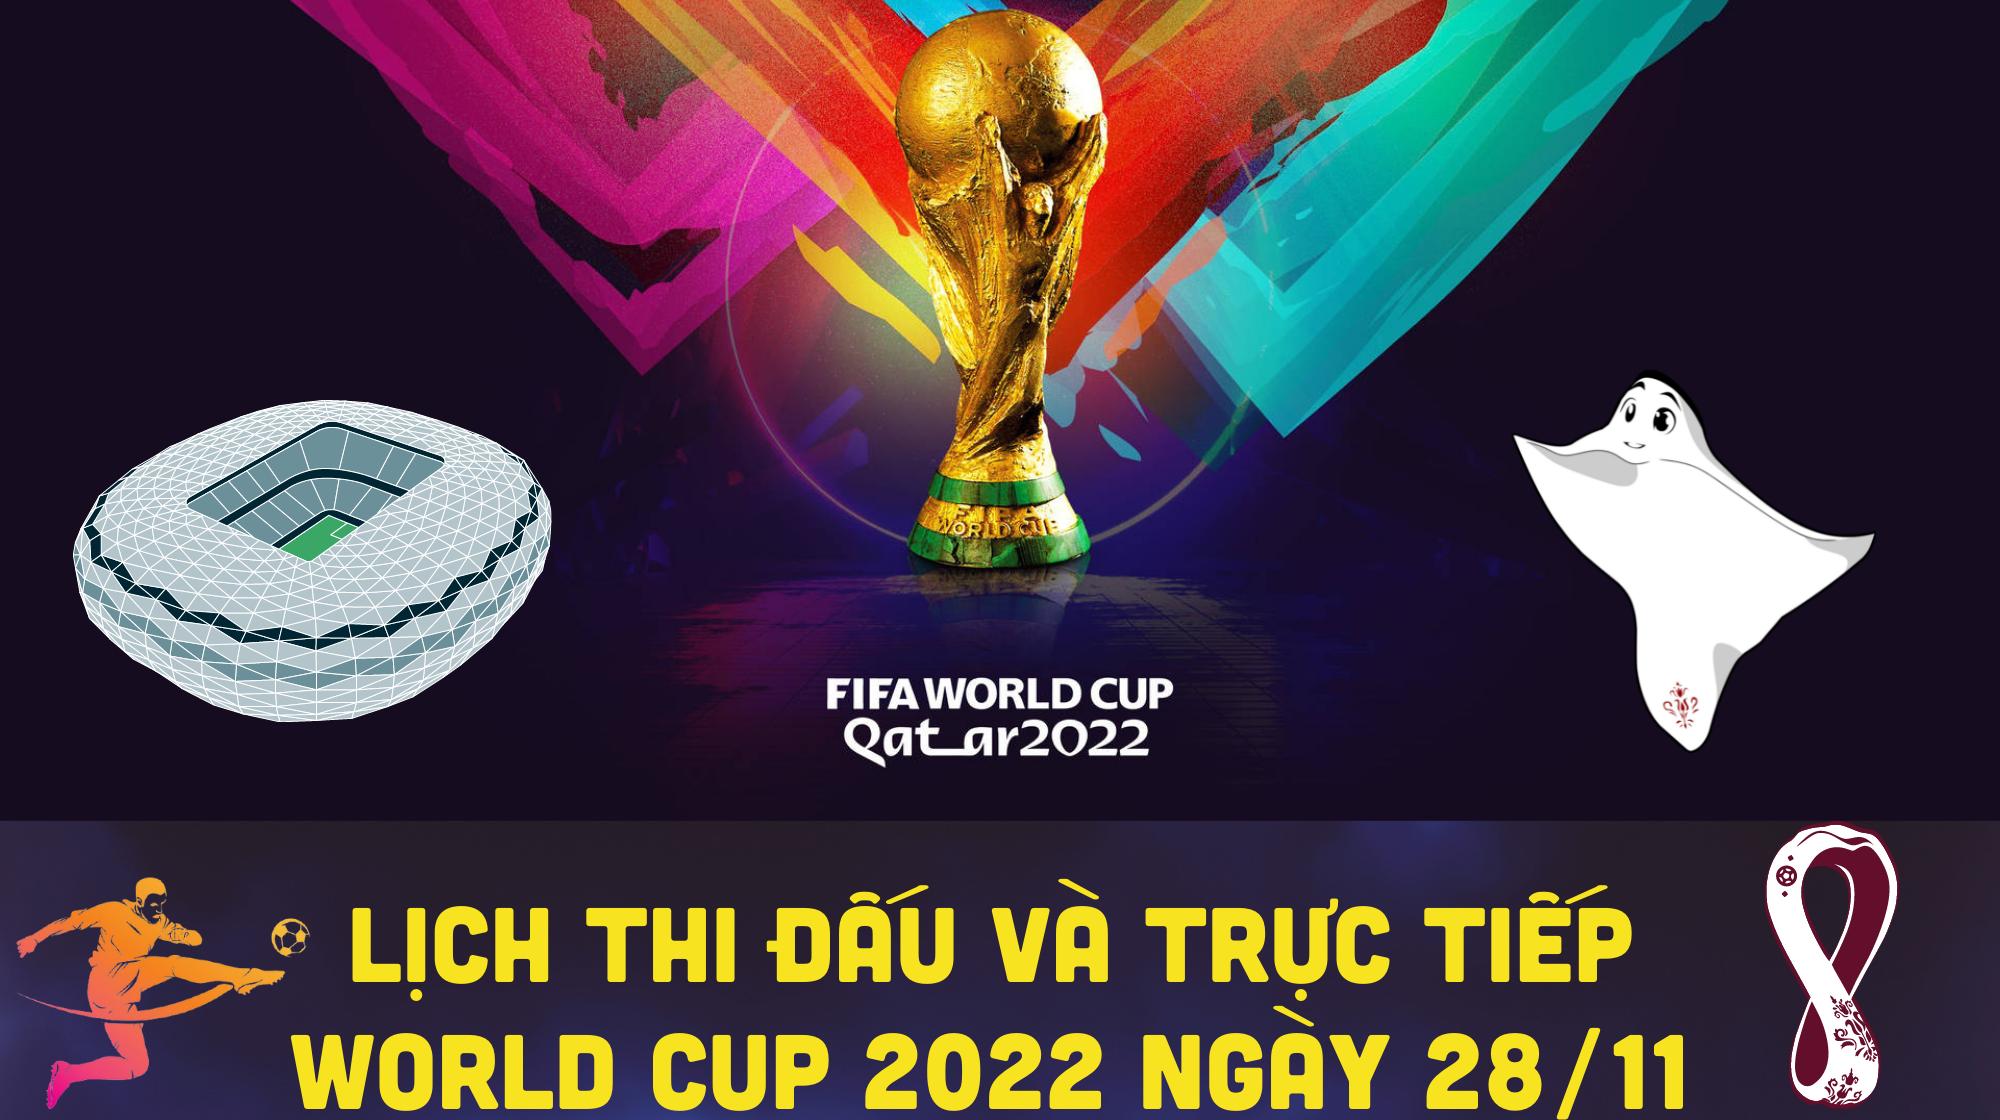 Lịch thi đấu và trực tiếp World Cup 2022 ngày 28/11